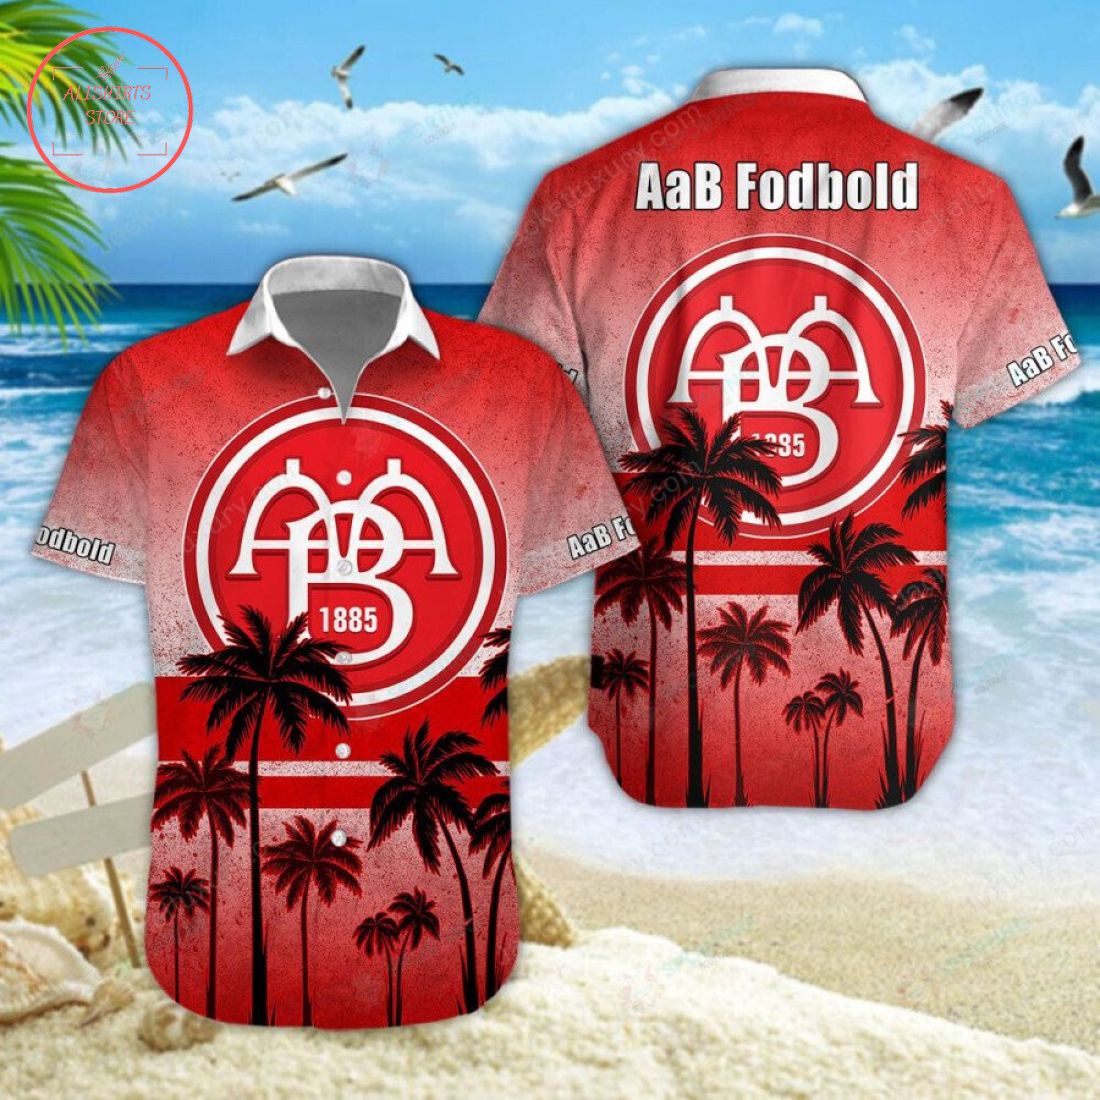 AaB Fodbold Hawaiian Shirt Shorts and Flip Flops